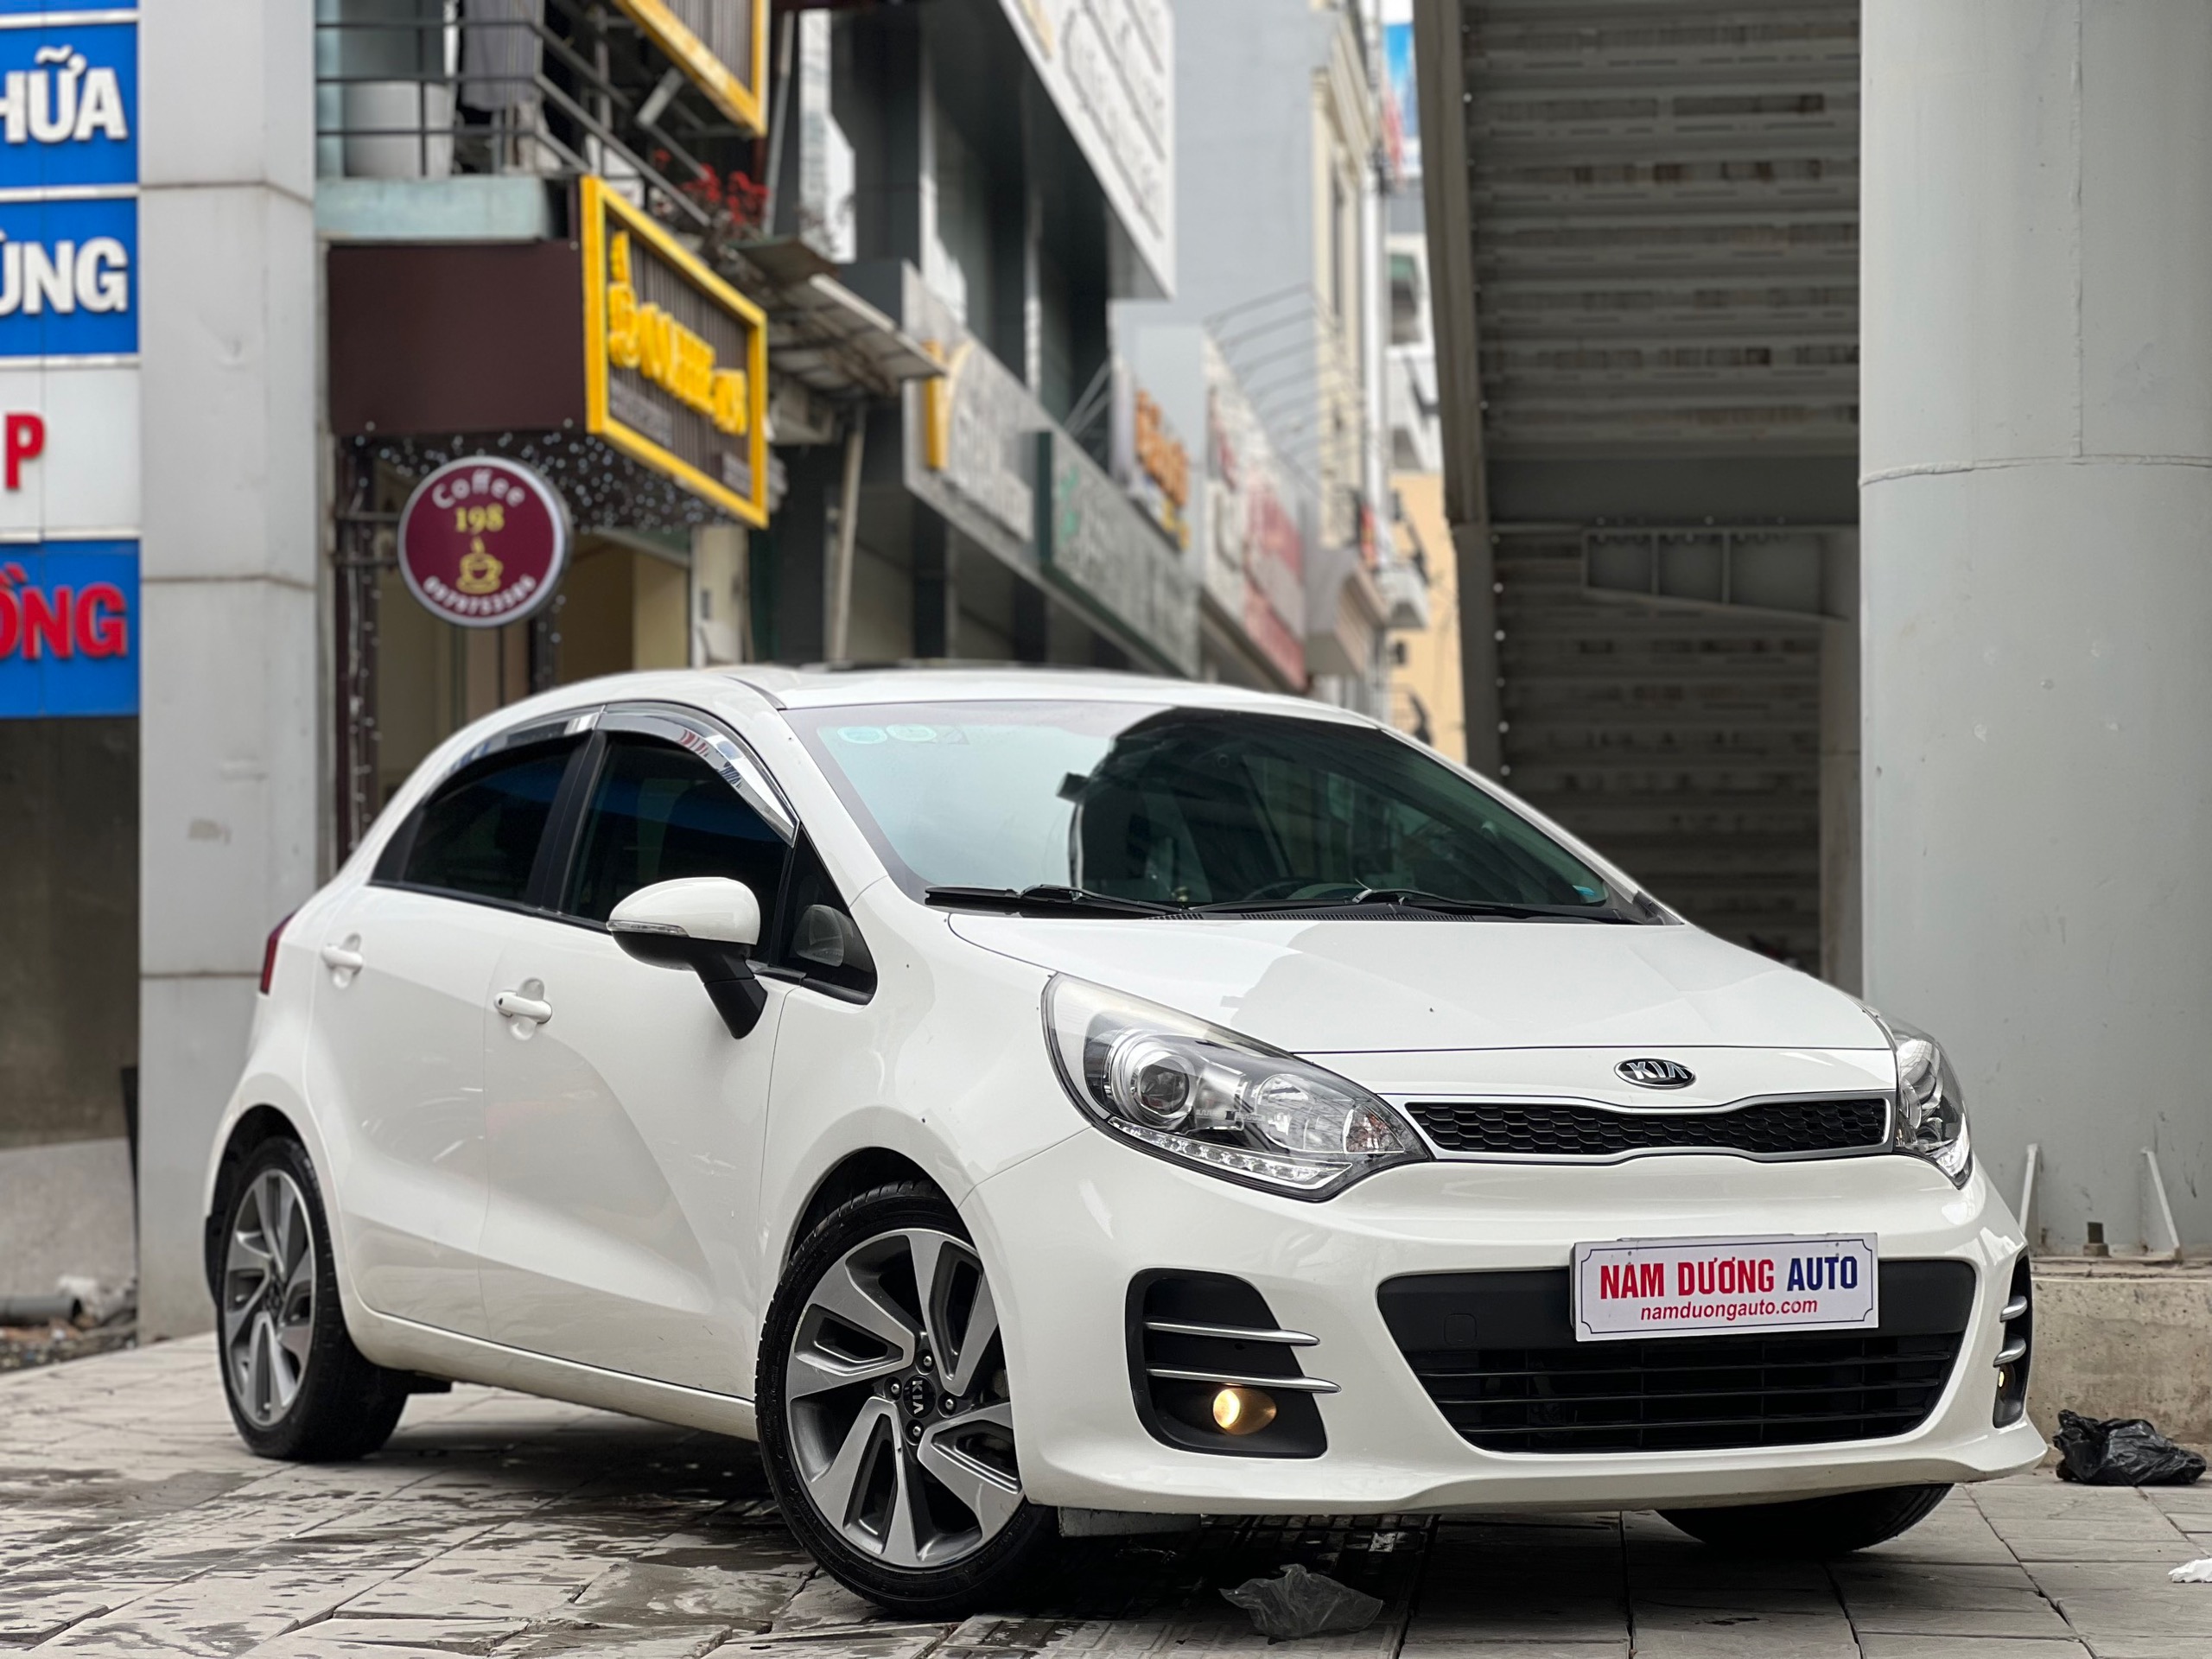 CEO Nam Dương Auto thổ lộ chiến lược kinh doanh xe cũ có 1 không 2   All you need for Car